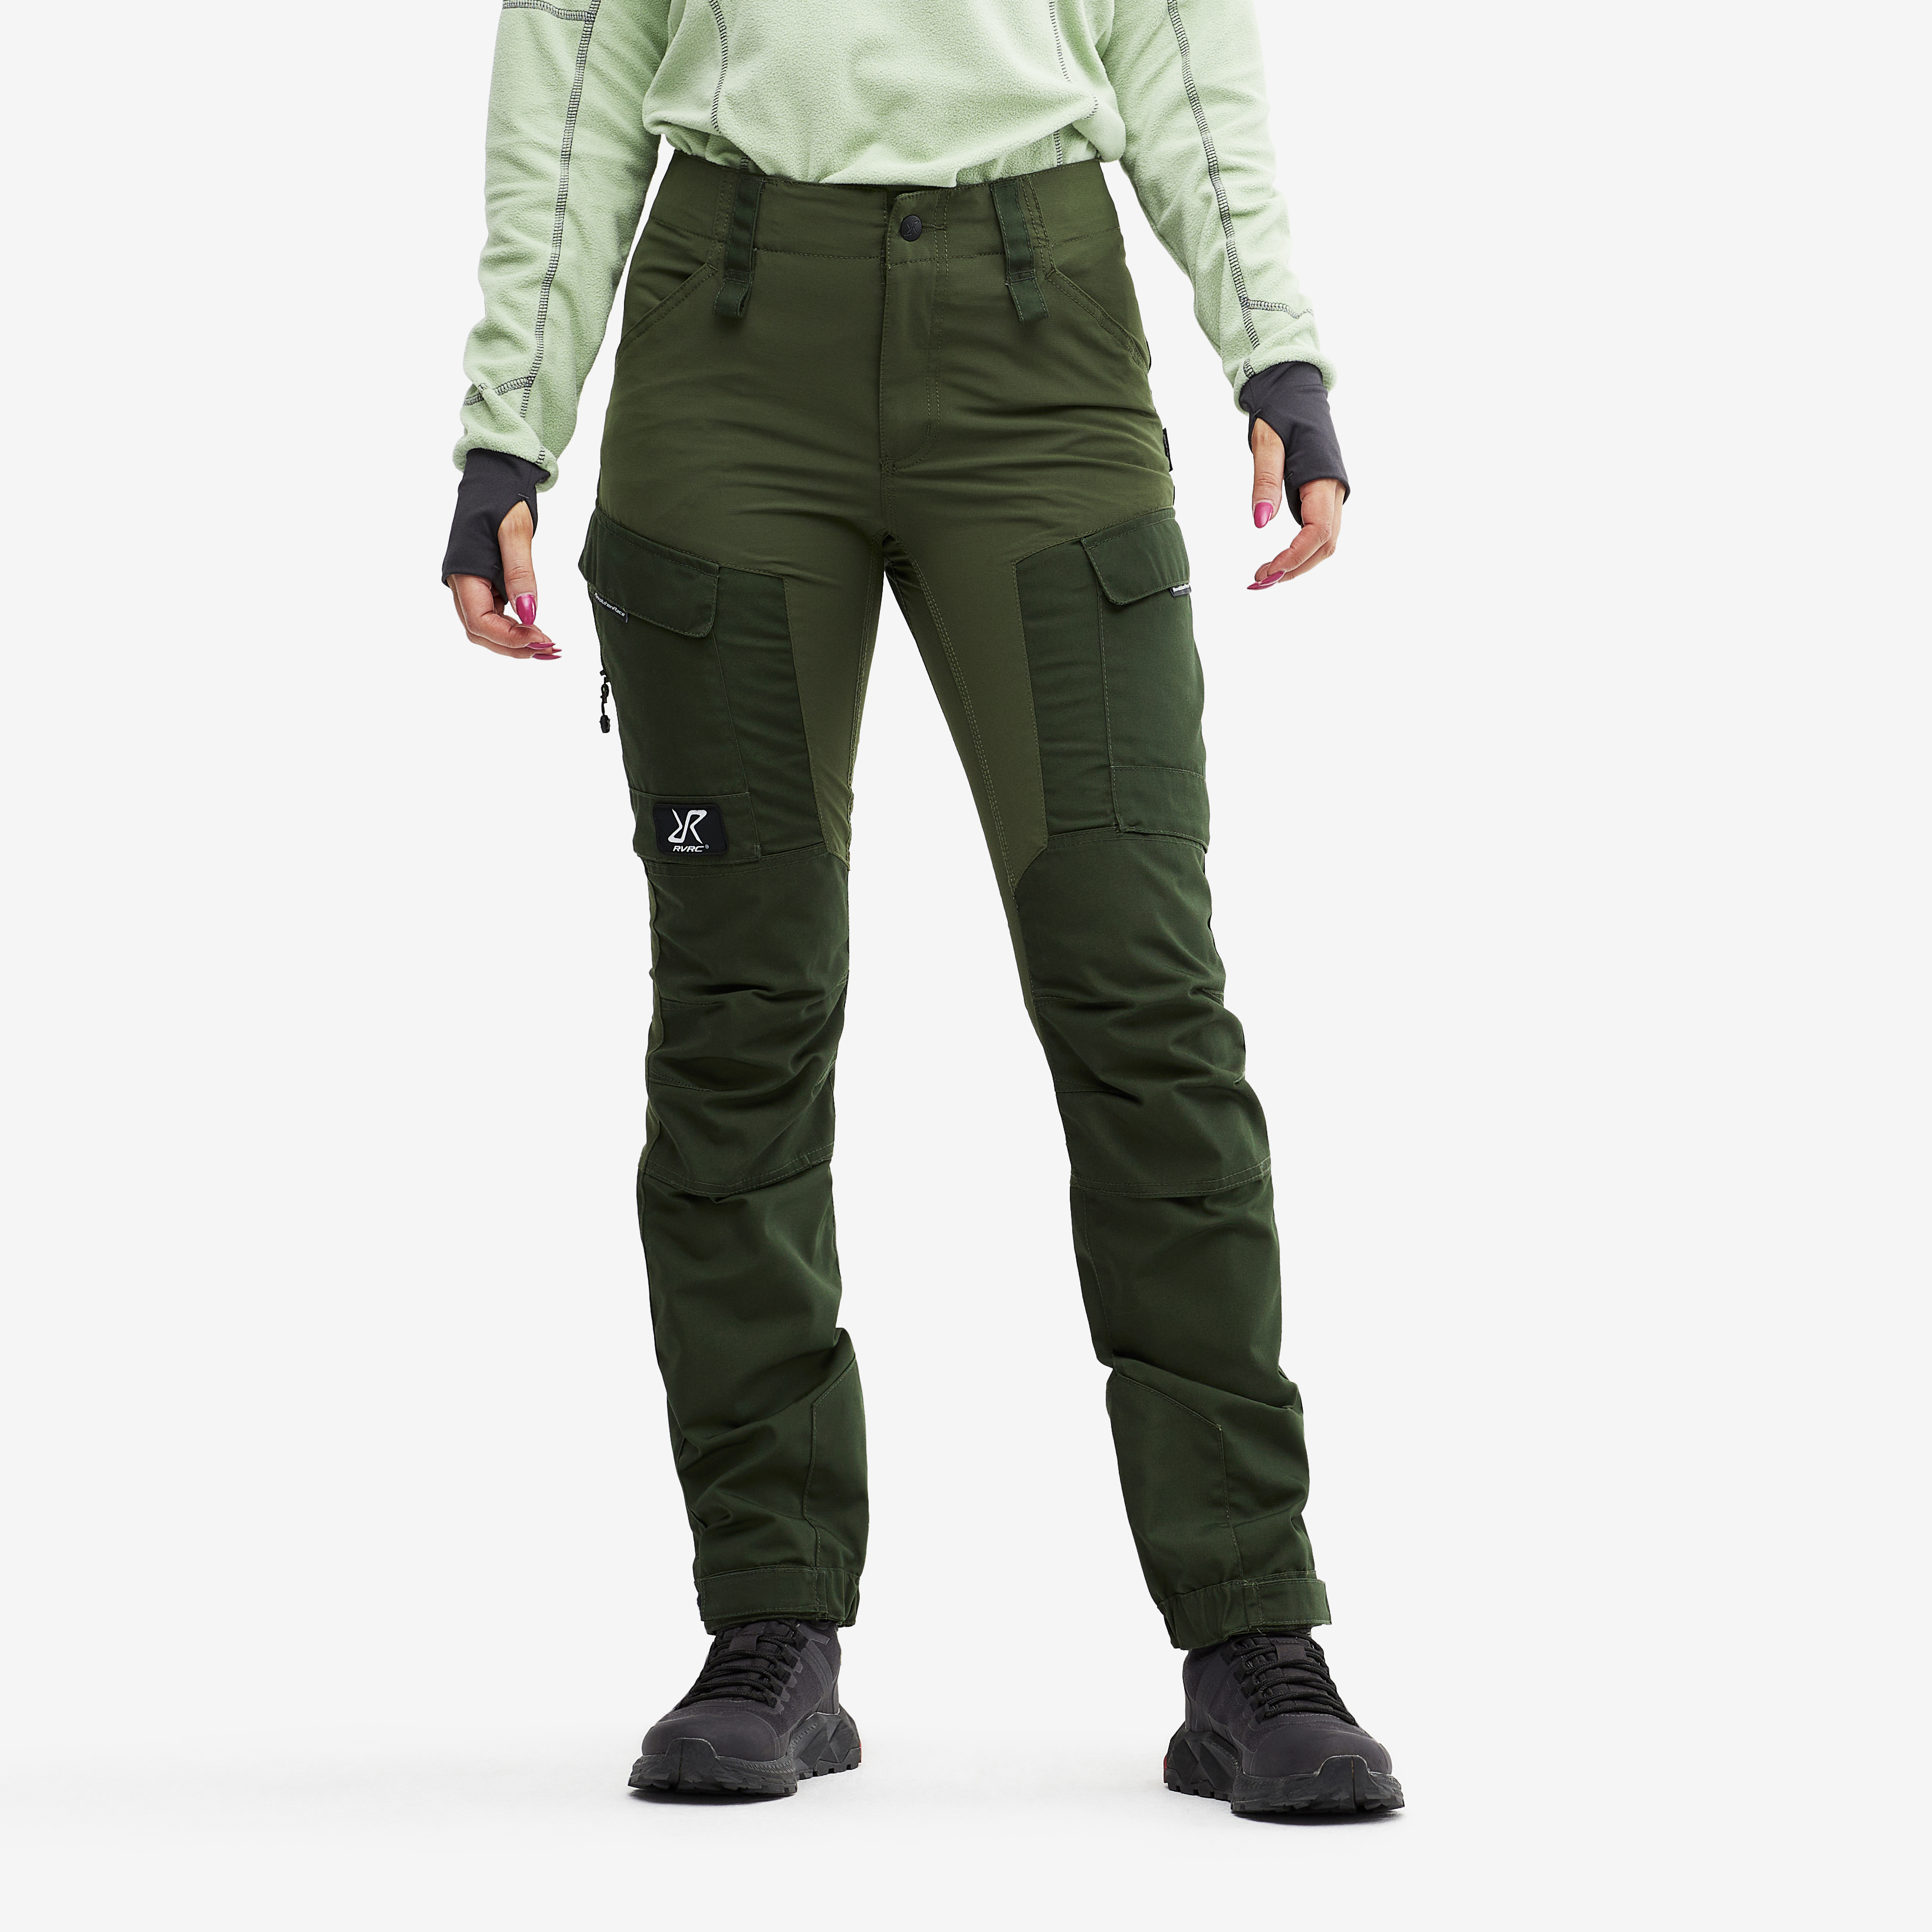 RVRC GP outdoor bukser for kvinder i grøn